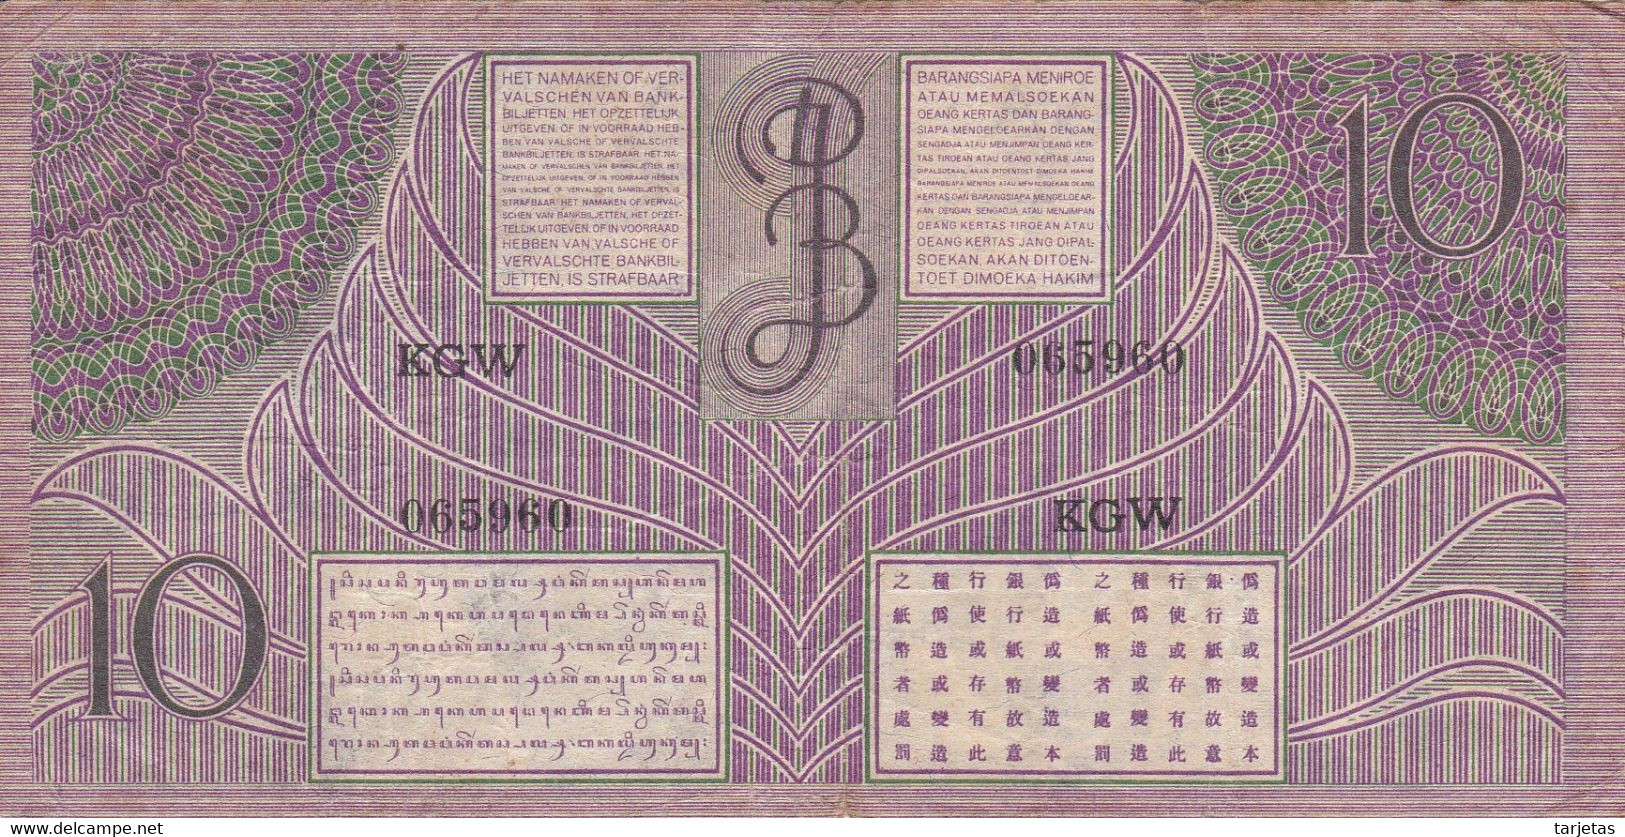 BILLETE DE INDES NEERLANDESAS DE 10 GULDEN DEL AÑO 1946 (BANKNOTE) JAVASCHE BANK - Indes Néerlandaises